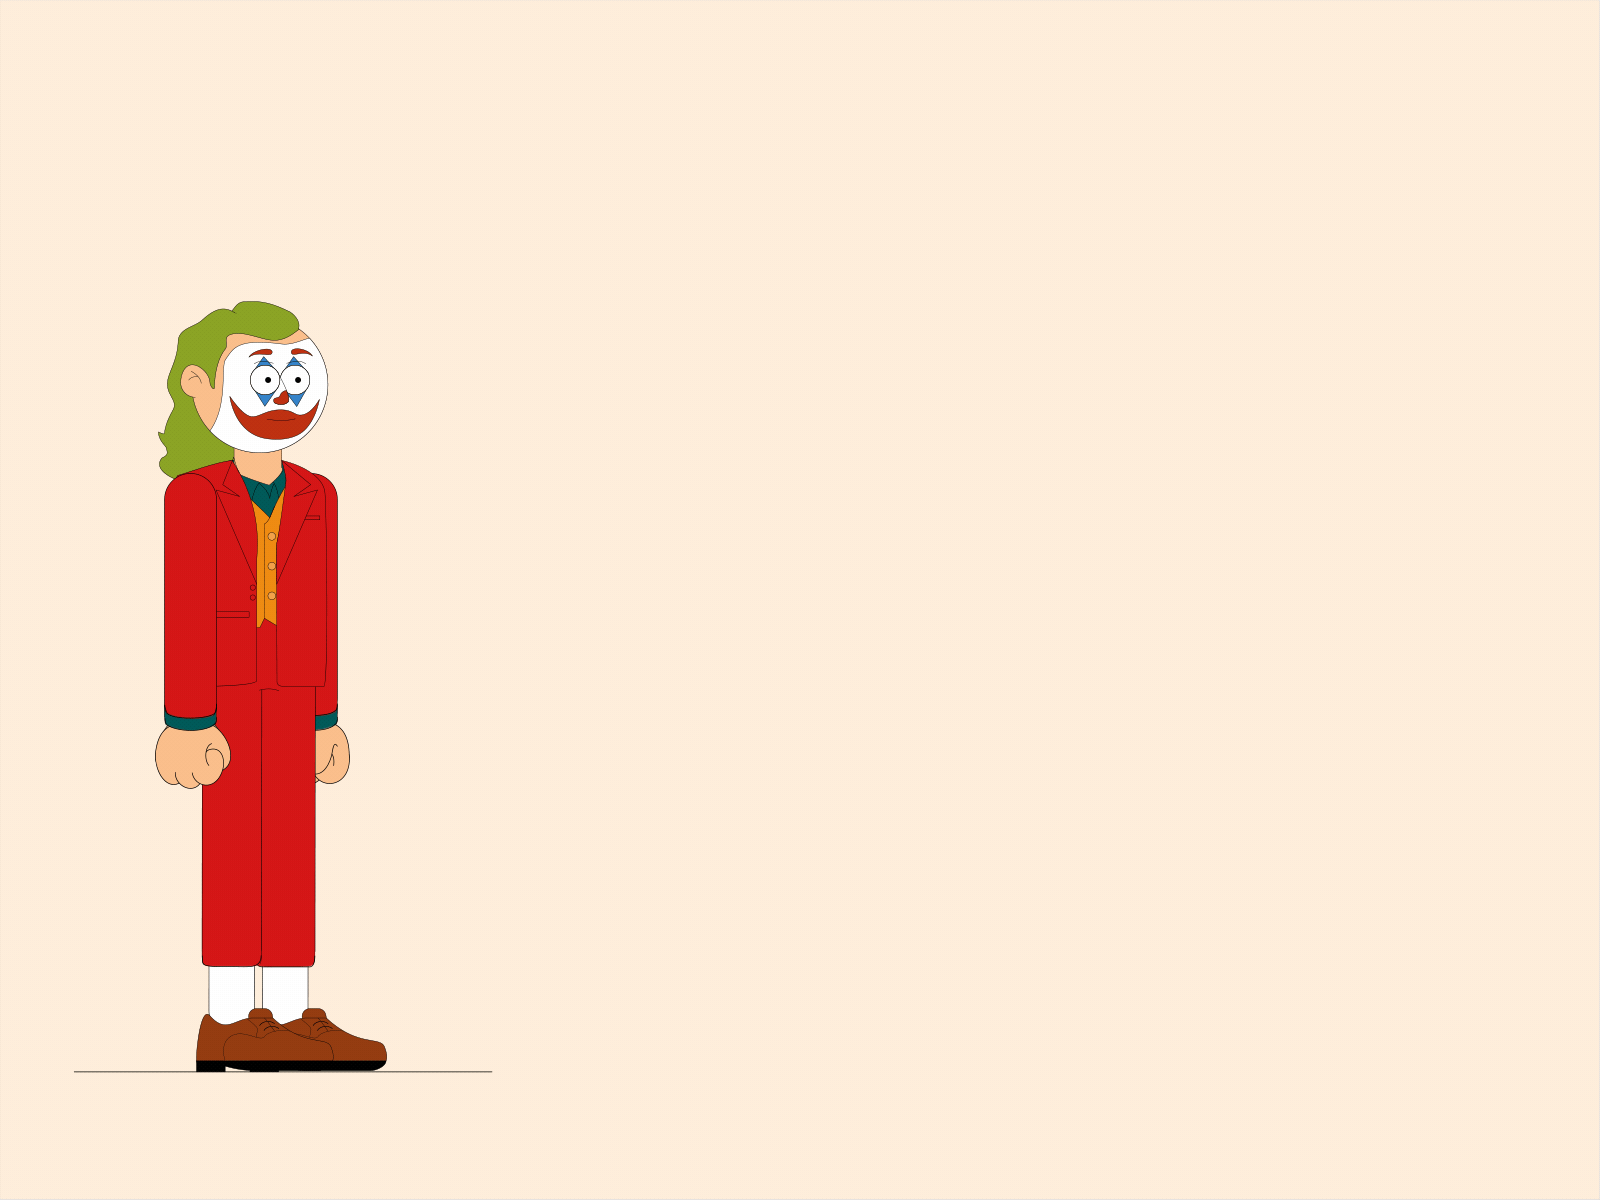 Jumping Joker animation flatdesign illustration illustrator joker movie motion design